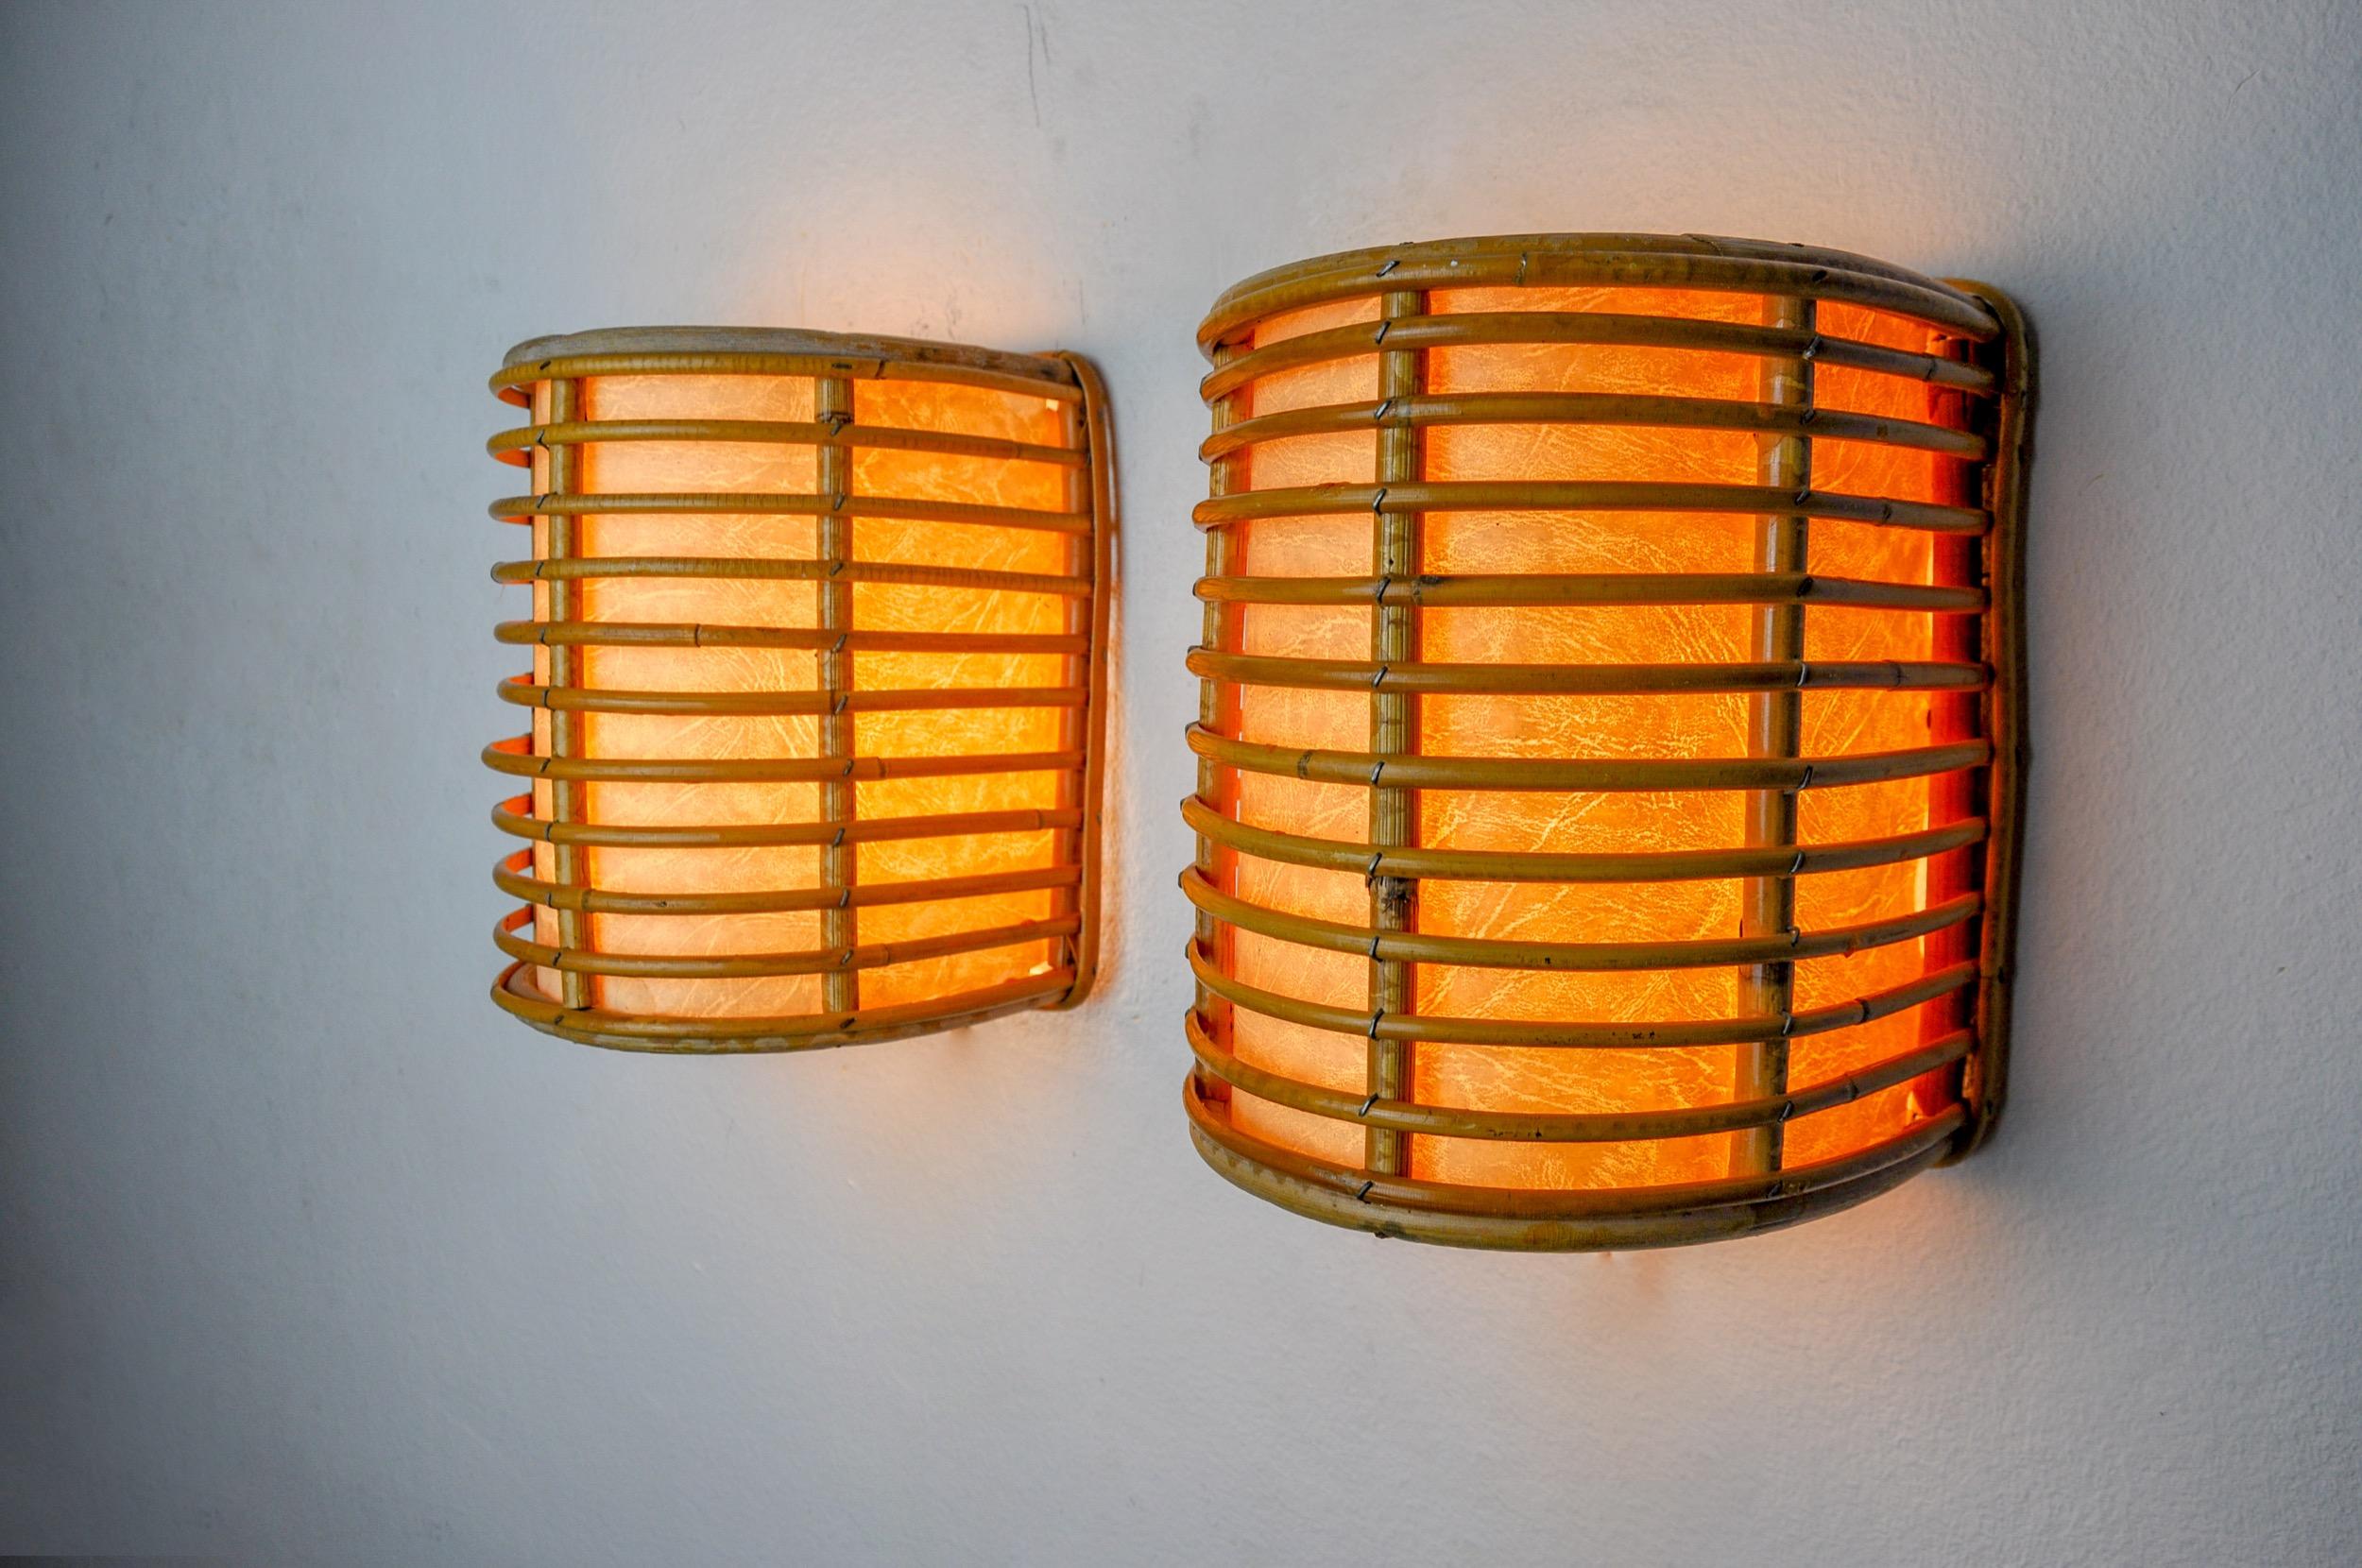 Sehr schönes Paar Rattan-Wandlampen, entworfen und hergestellt in Frankreich in den 1960er Jahren. Ein klassisches Design, das Ihr Interieur perfekt beleuchtet. Geprüfte Elektrizität, Zeitmarke im Einklang mit dem Alter des Objekts. Einzigartiges